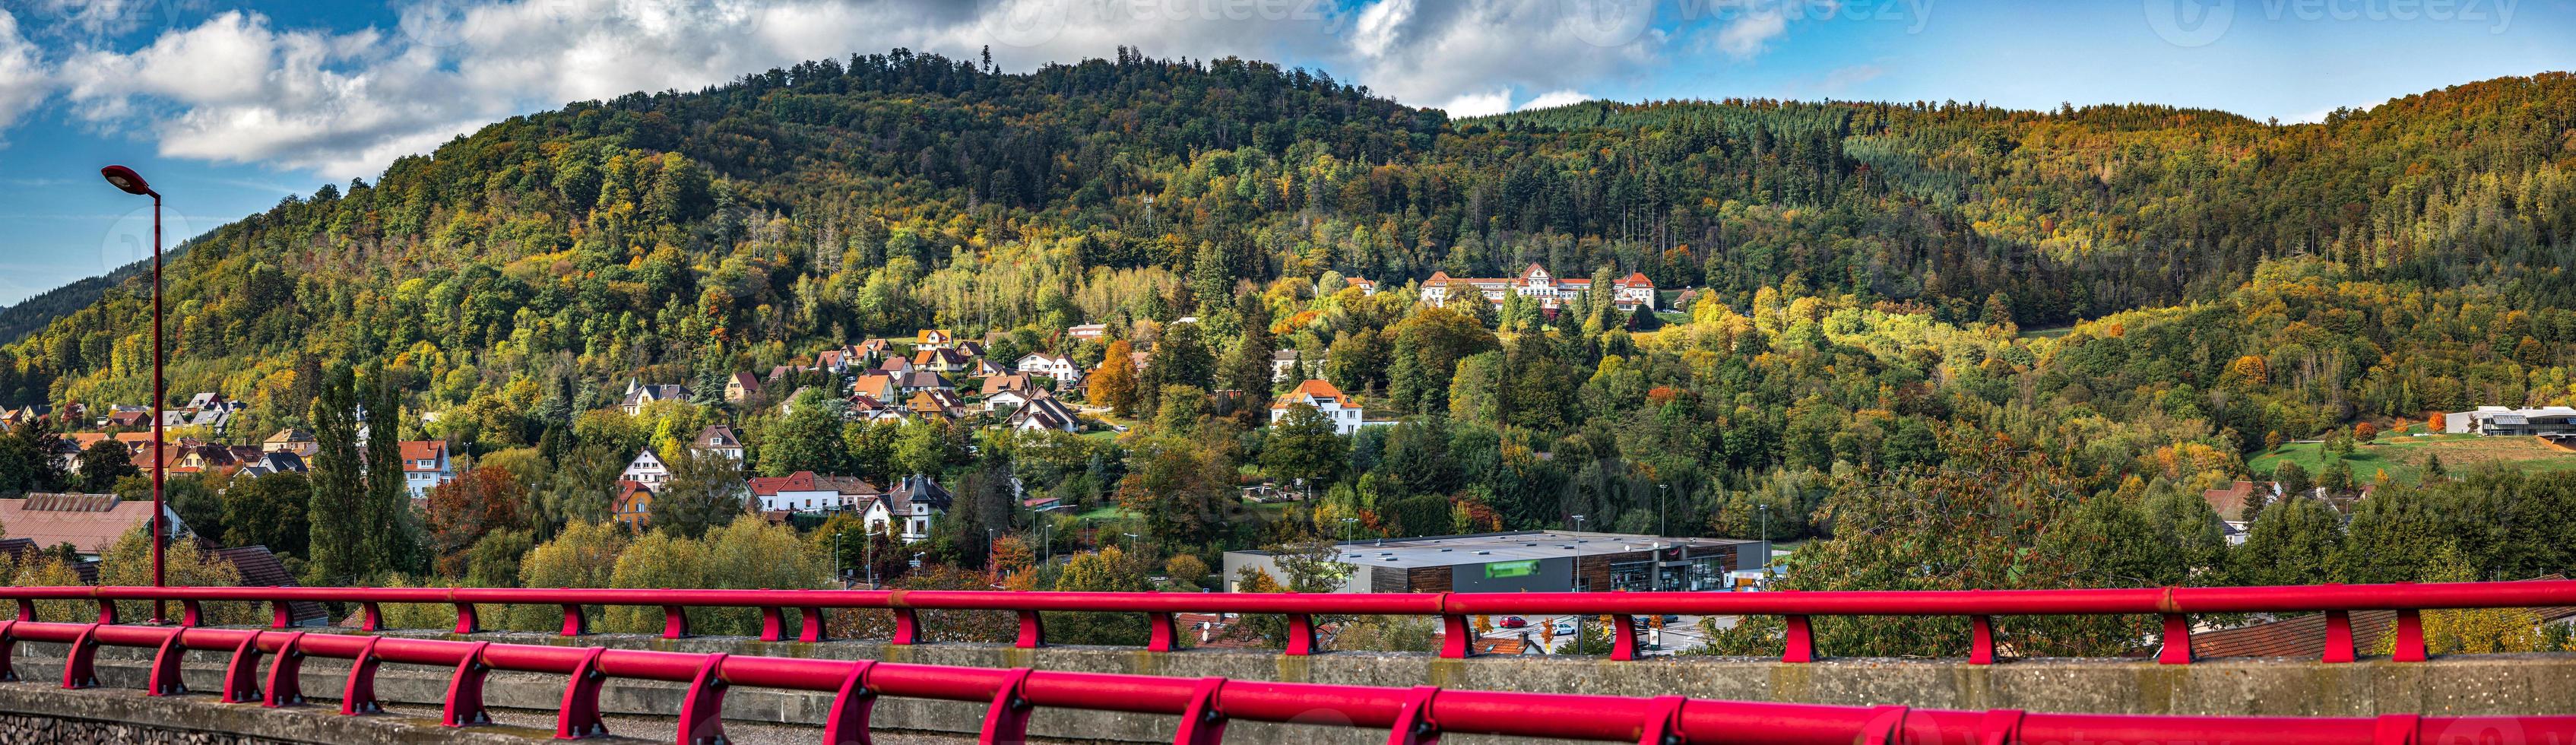 belle vue sur les montagnes vosgiennes colorées d'automne photo